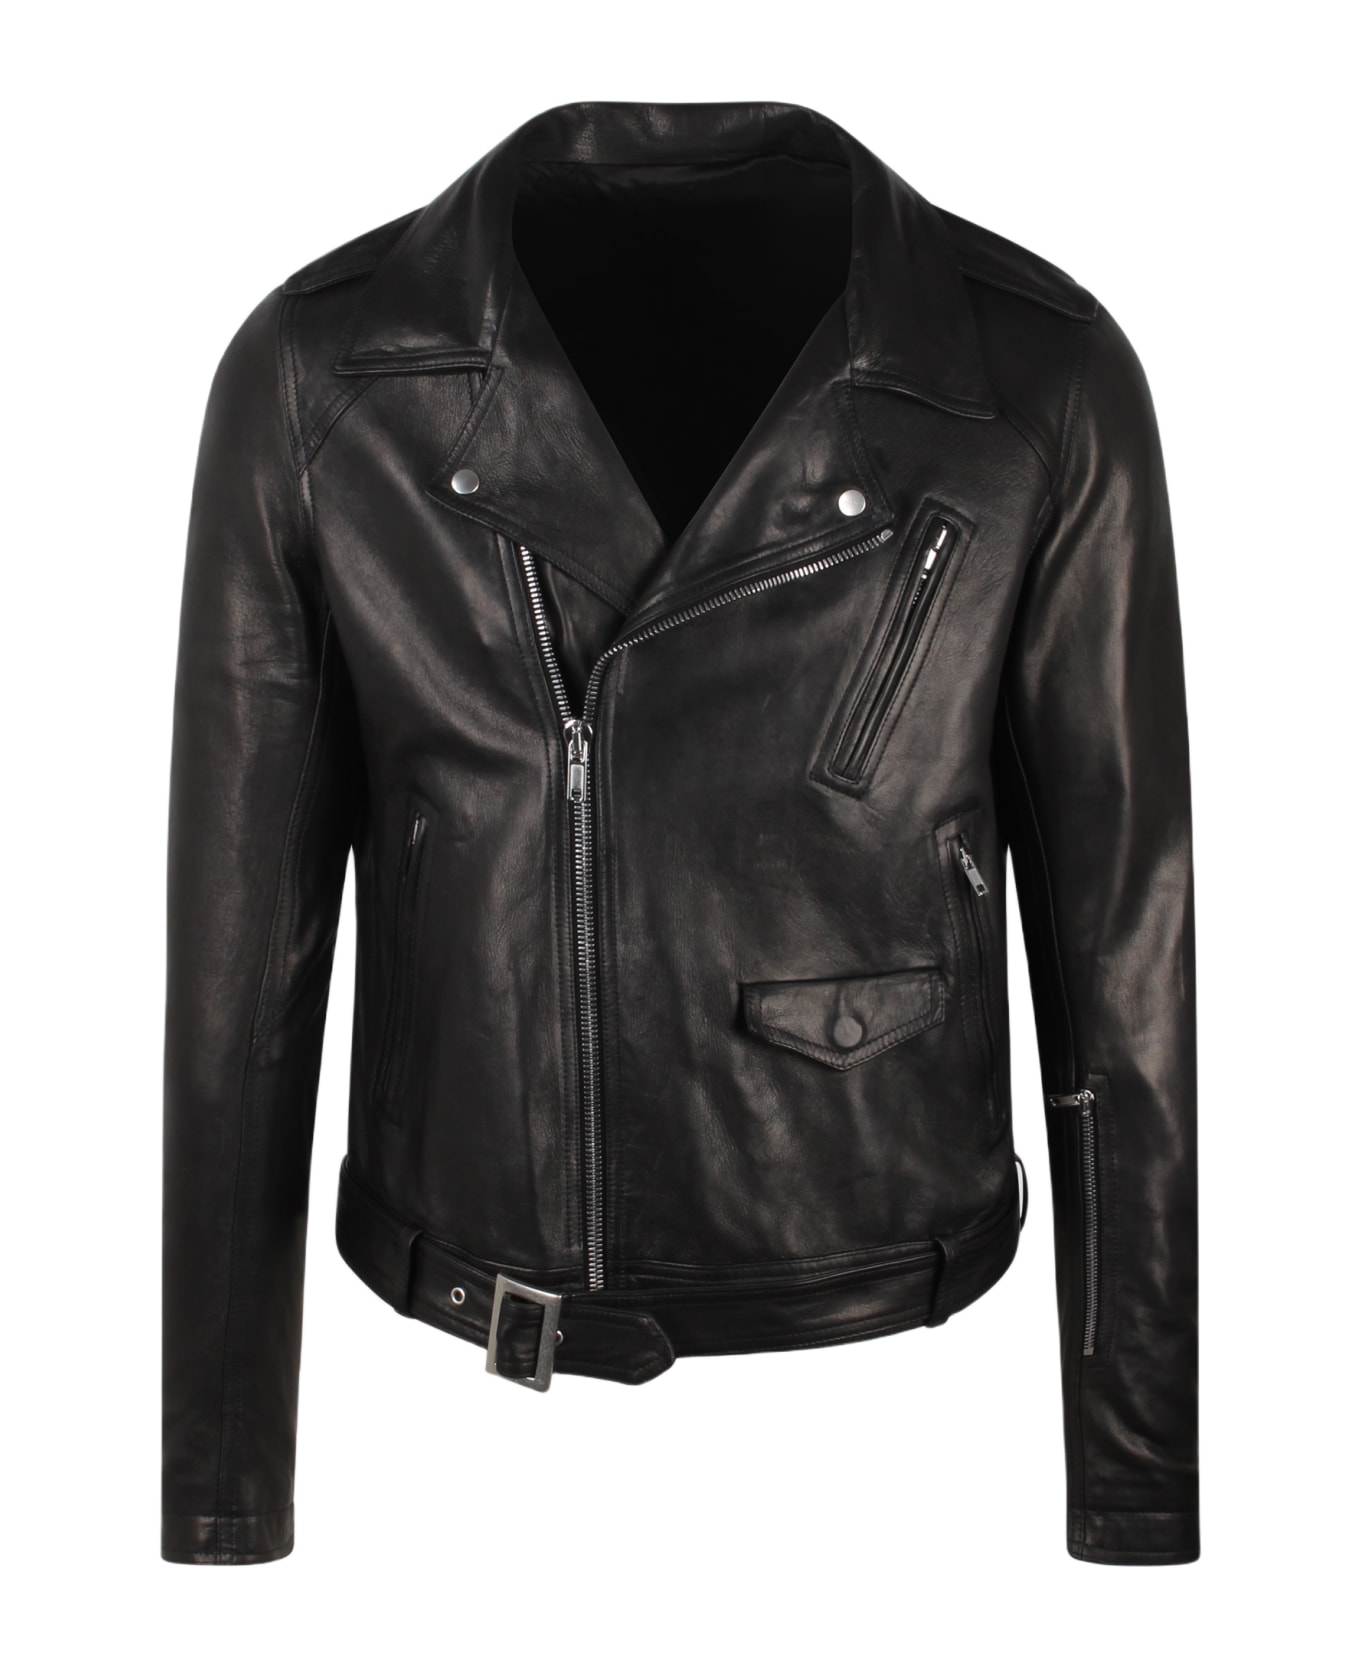 Rick Owens Lukes Stooges Leather Jacket - Black レザージャケット